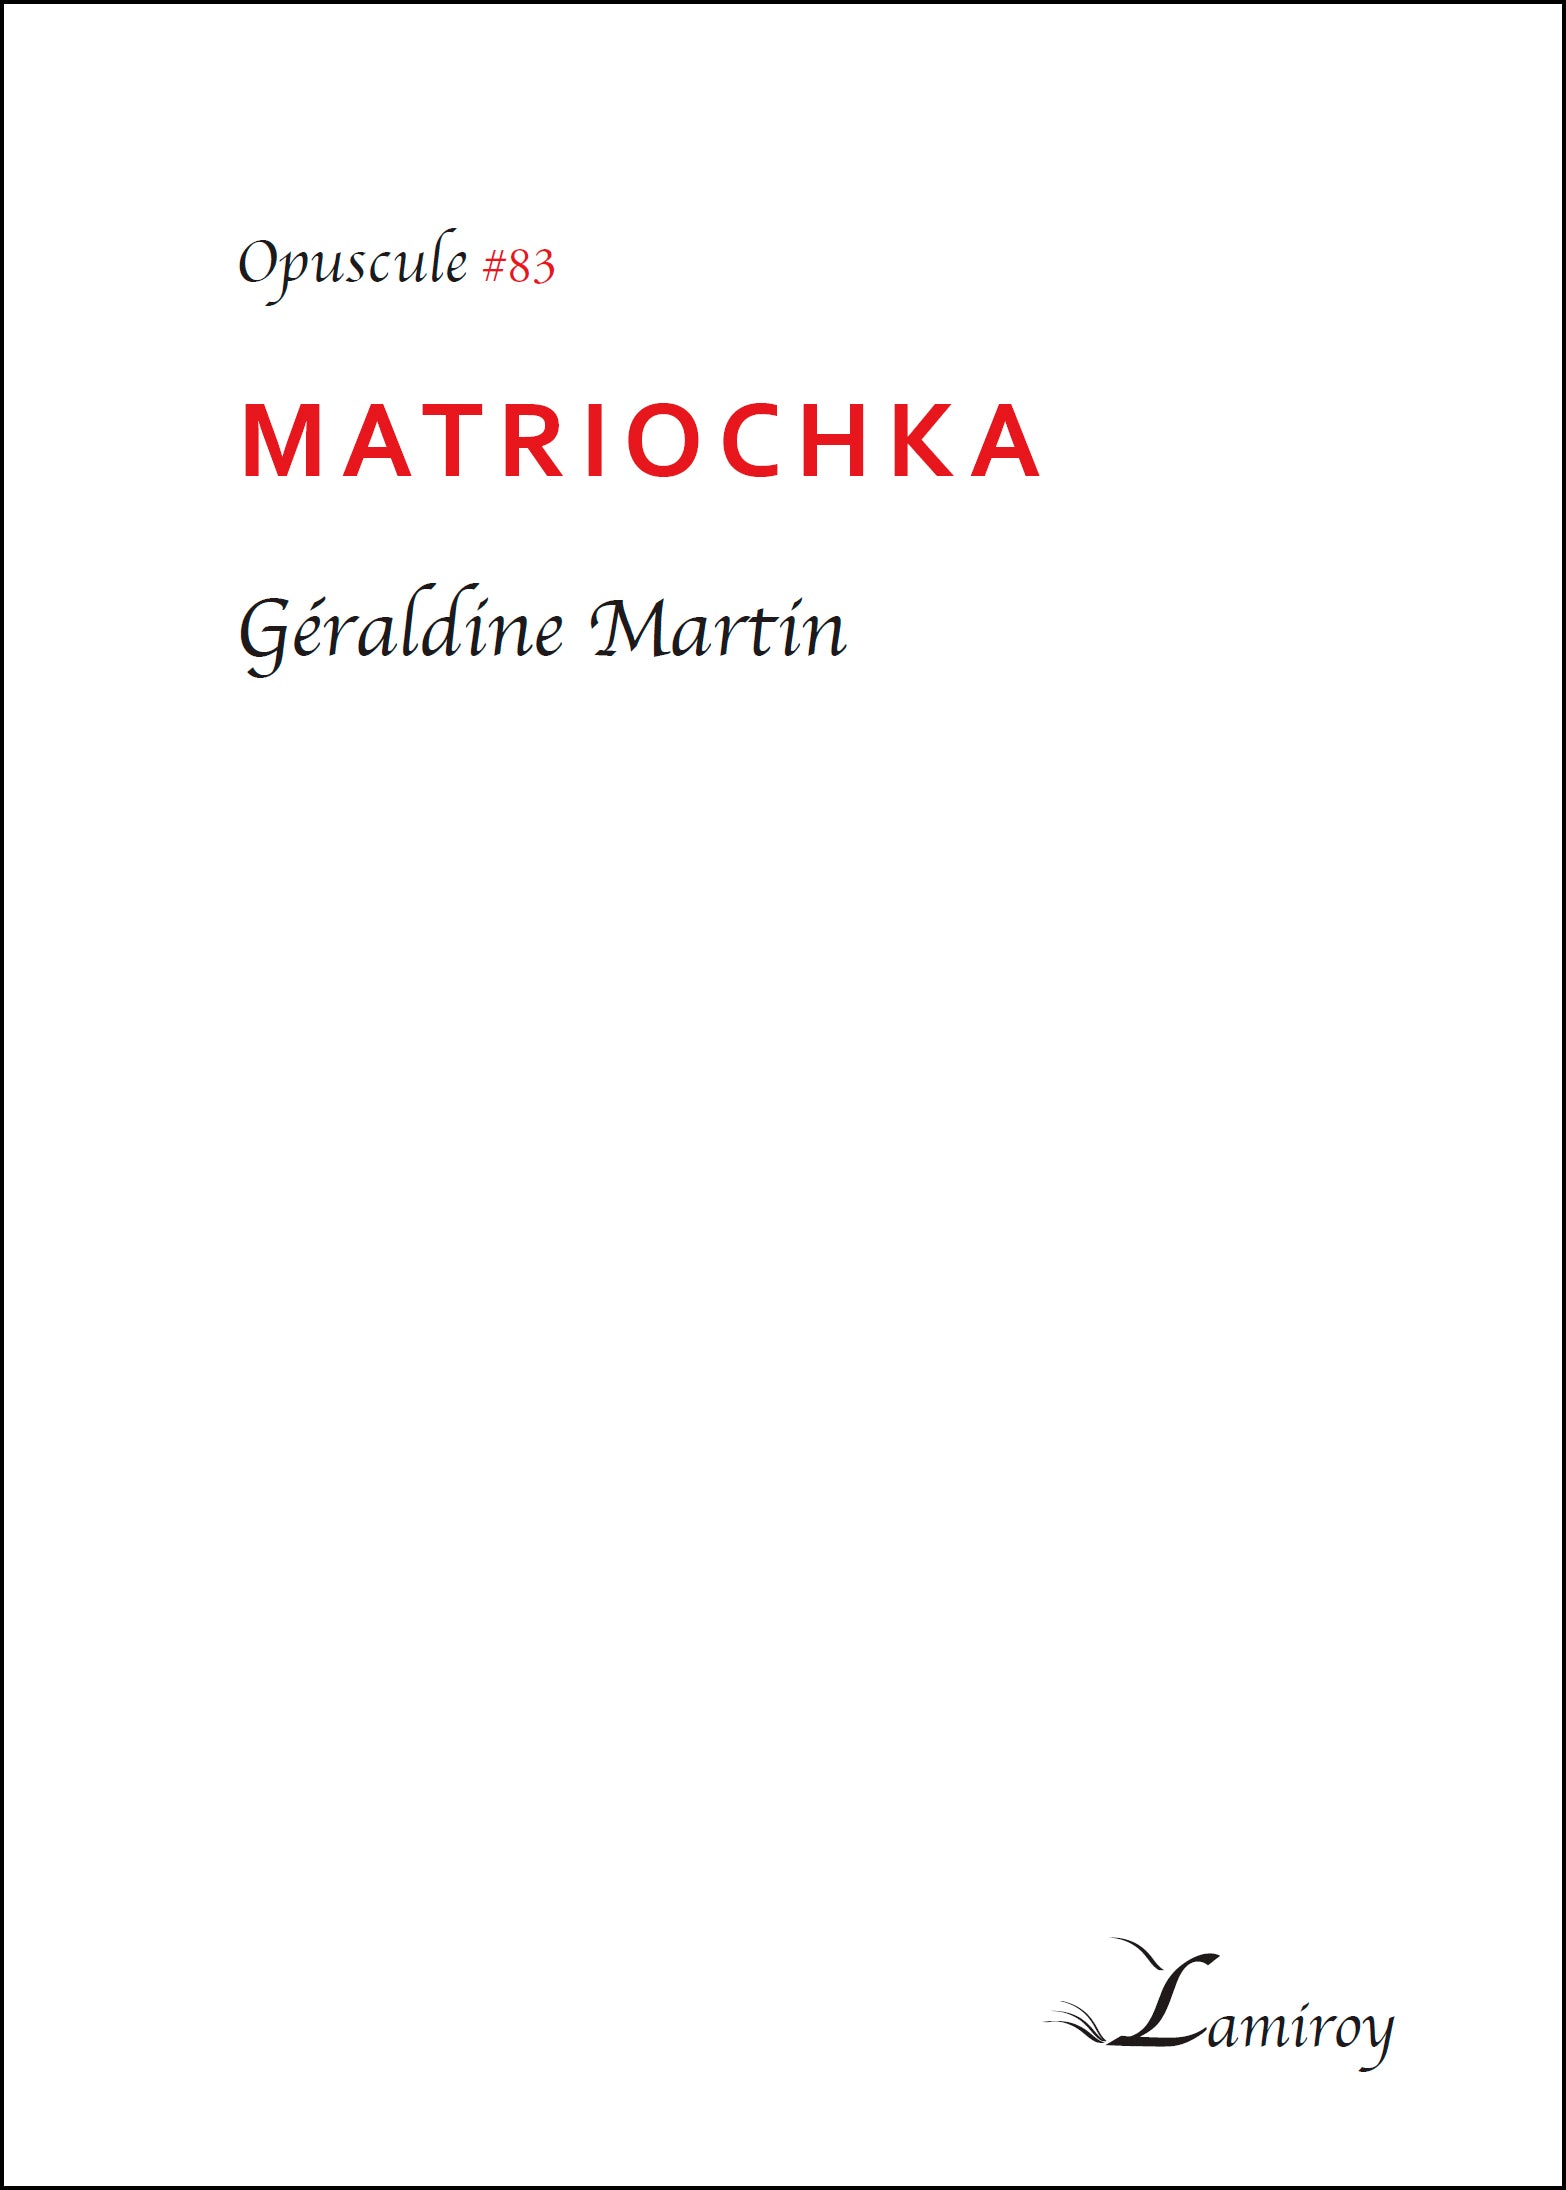 Matriochka #83